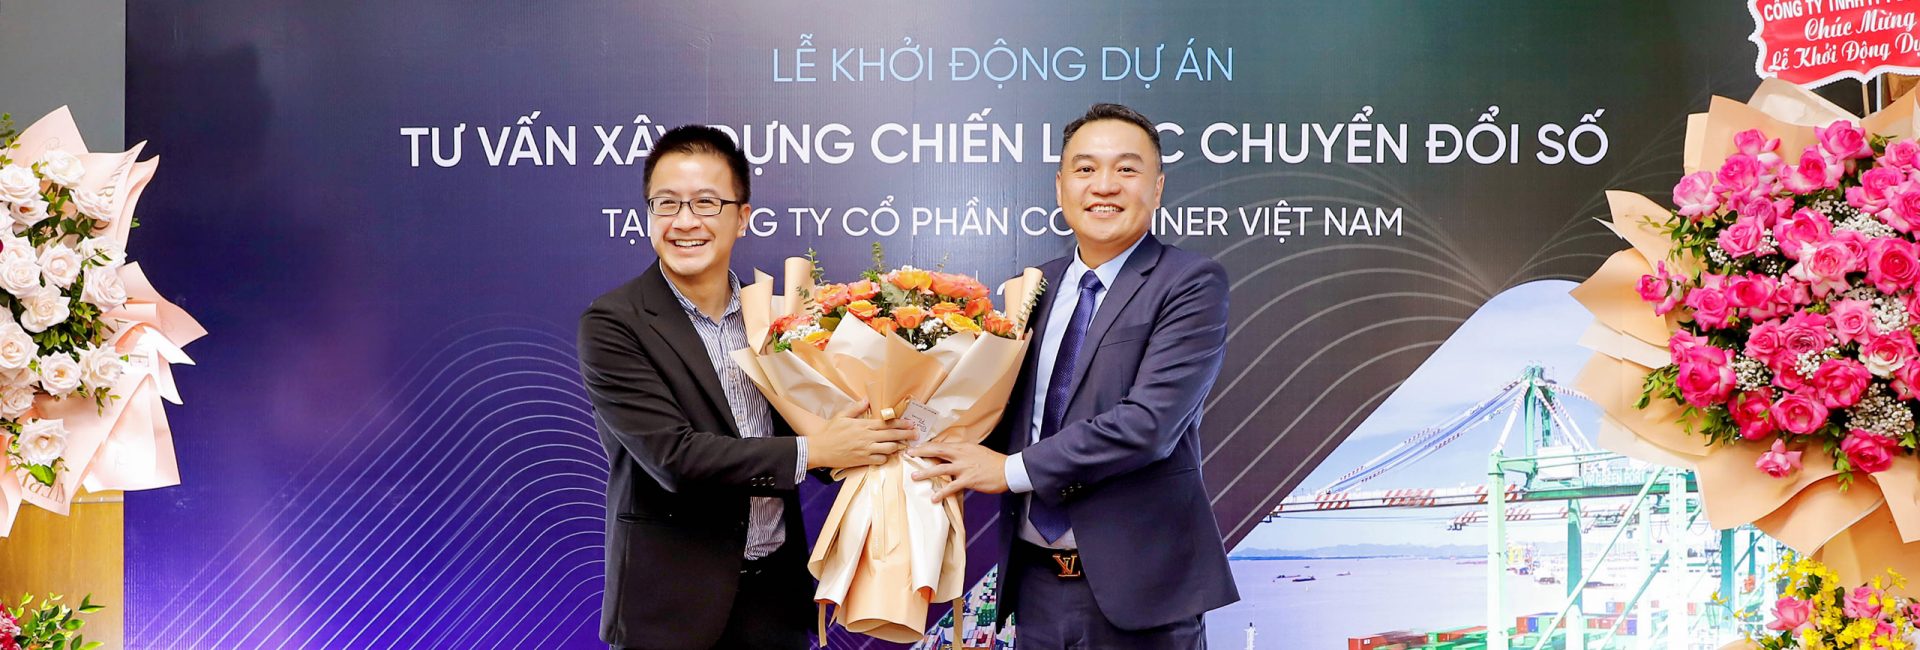 FPT Digital tư vấn xây dựng chiến lược Chuyển đổi số tại Công ty CP Container Việt Nam